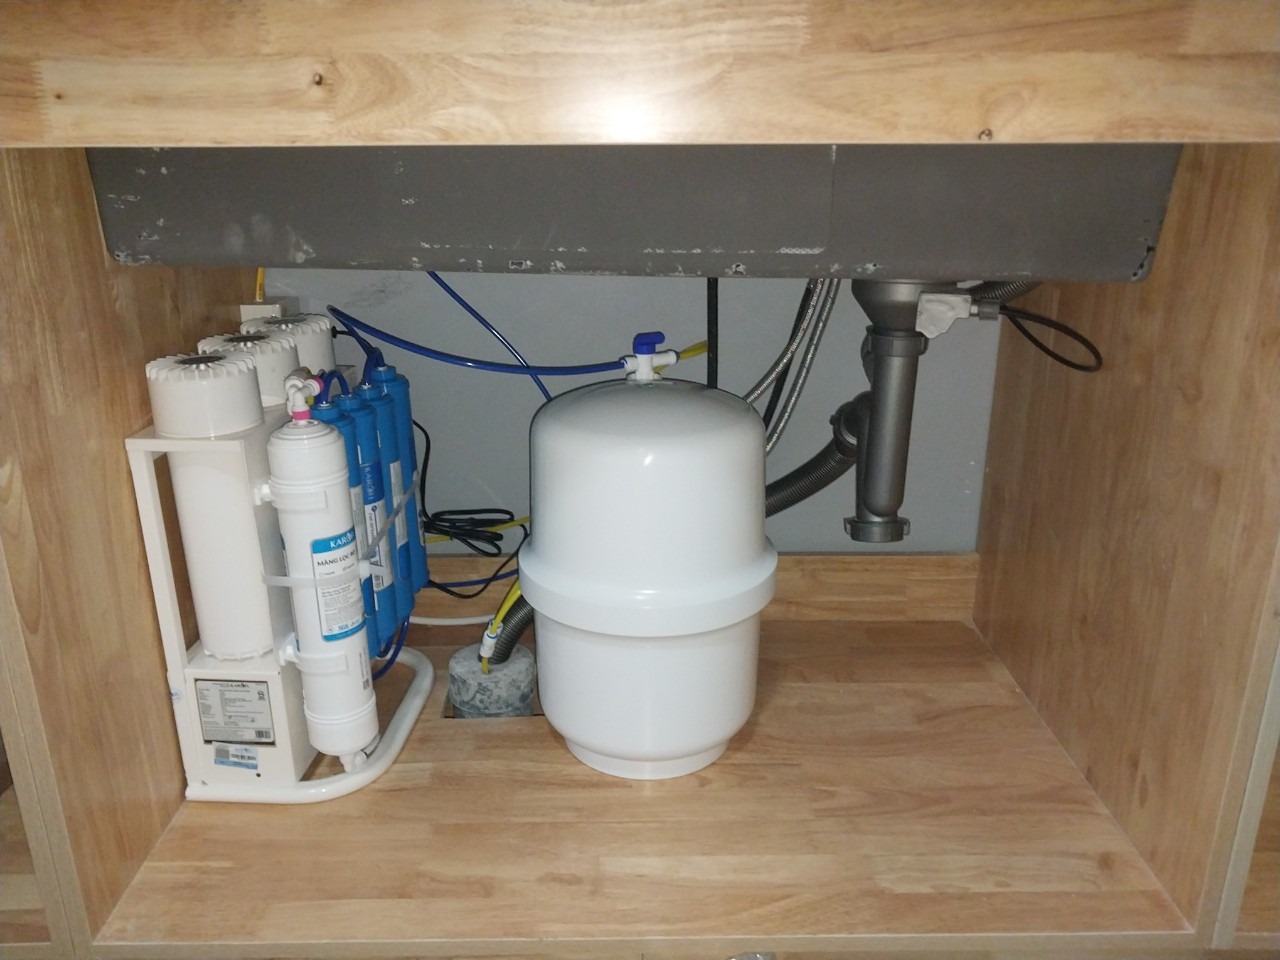 Dịch vụ ửa chữa máy lọc nước tại nhà chuyên nghiệp giá rẻ